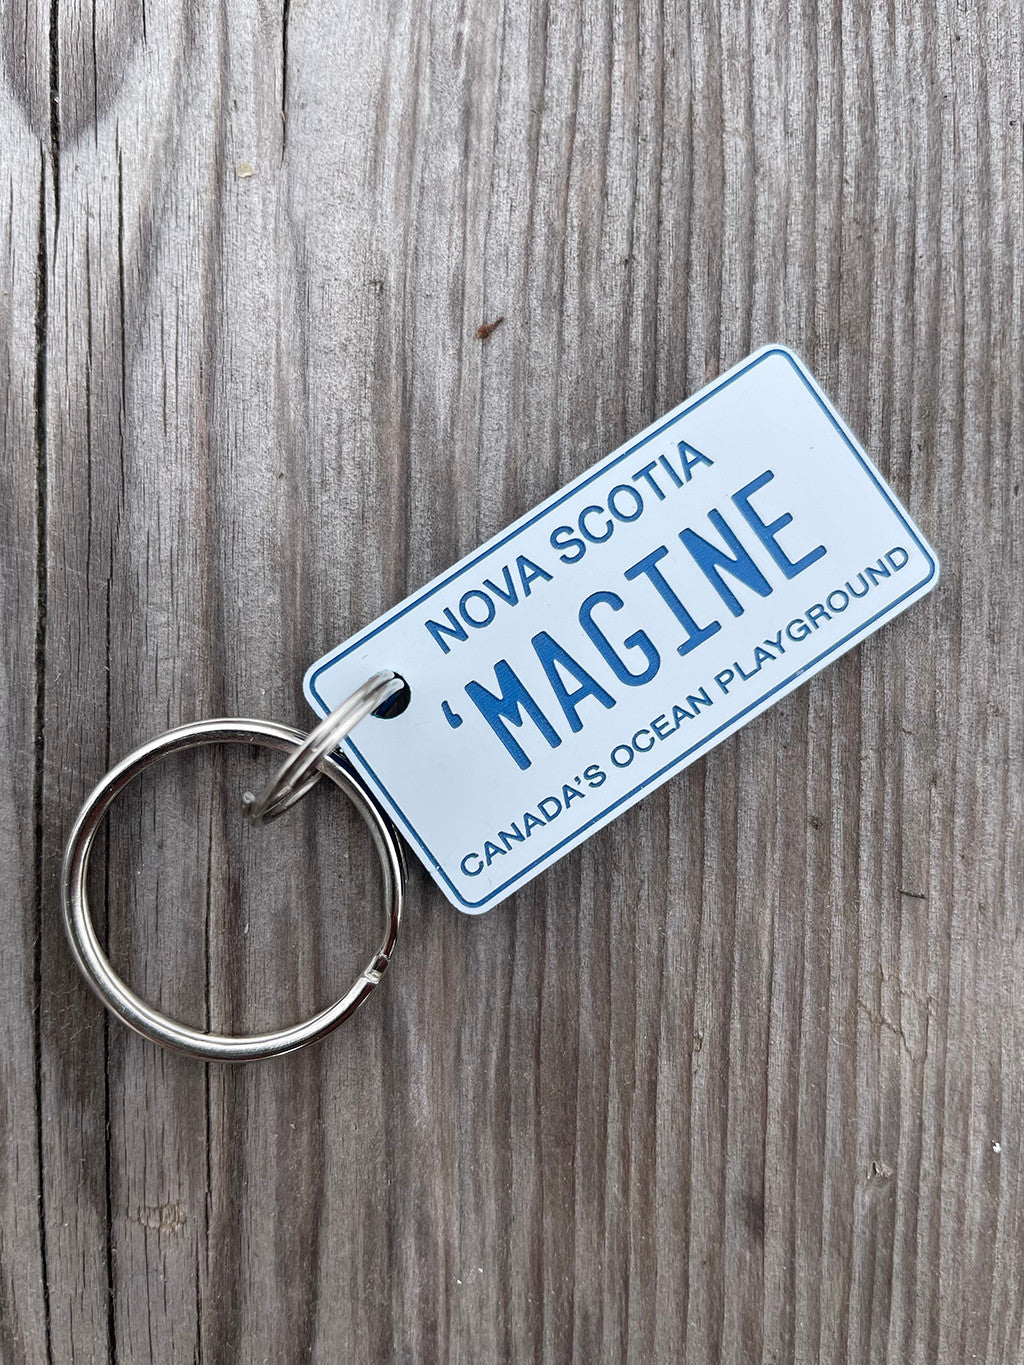 Nova Scotia License Plate Keychains